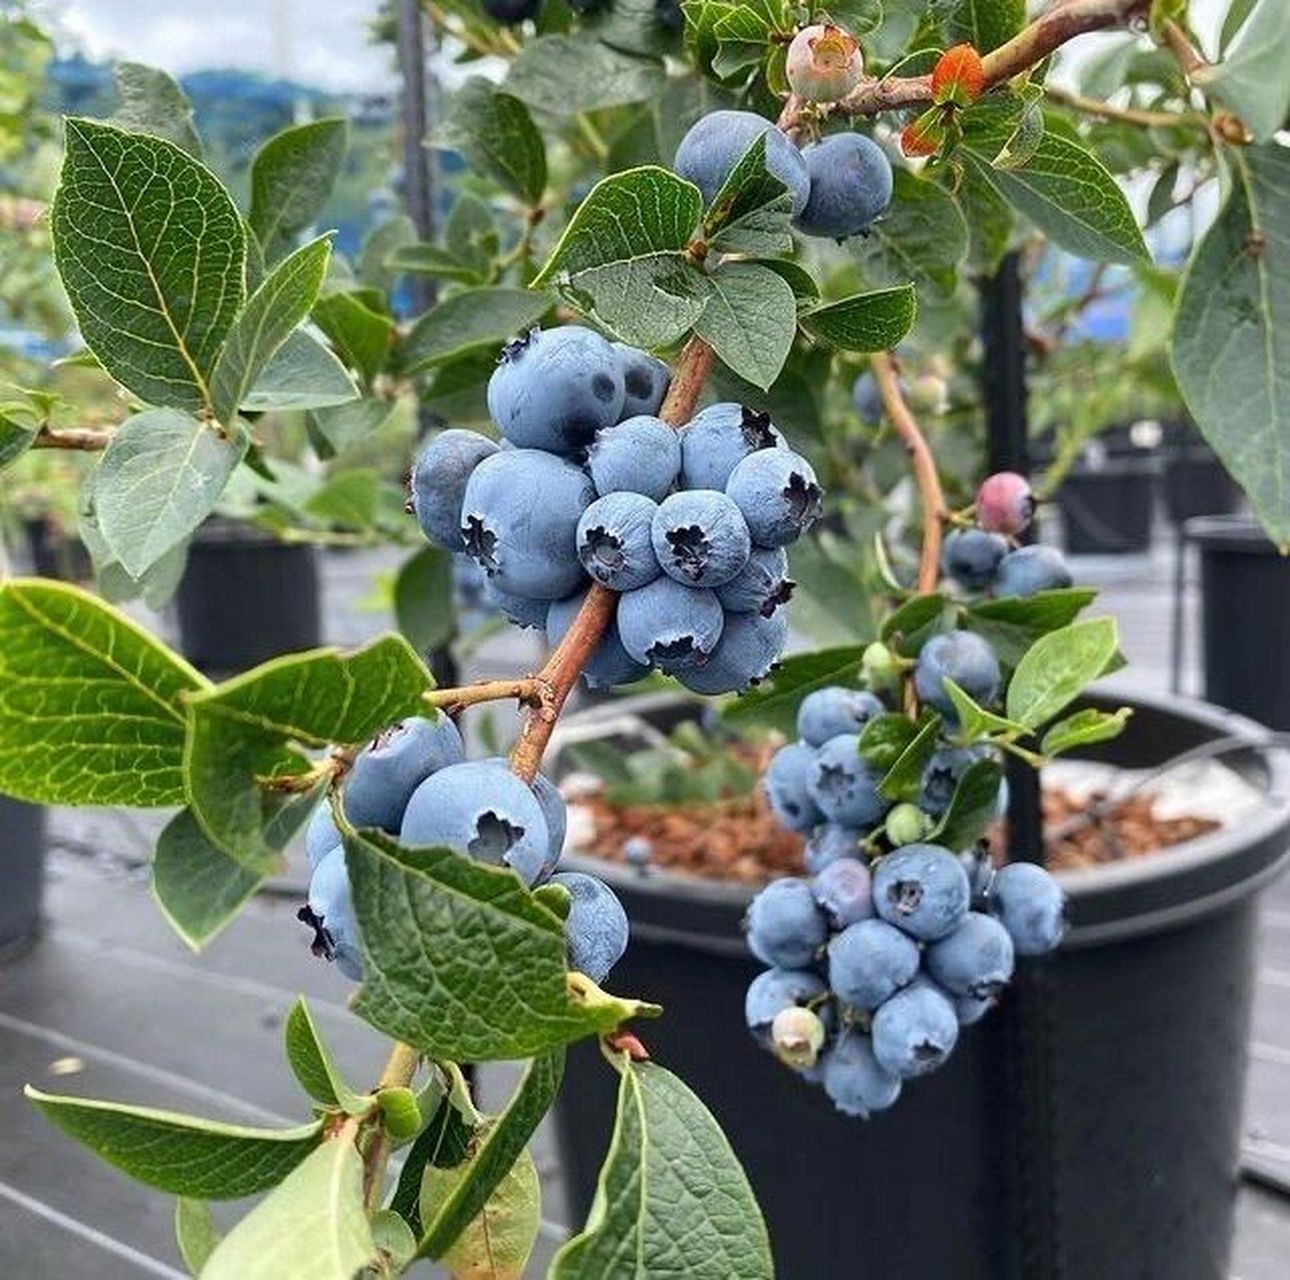 蓝莓果树不开花怎么办 【蓝莓的花期】 蓝莓树的花期在春季的3